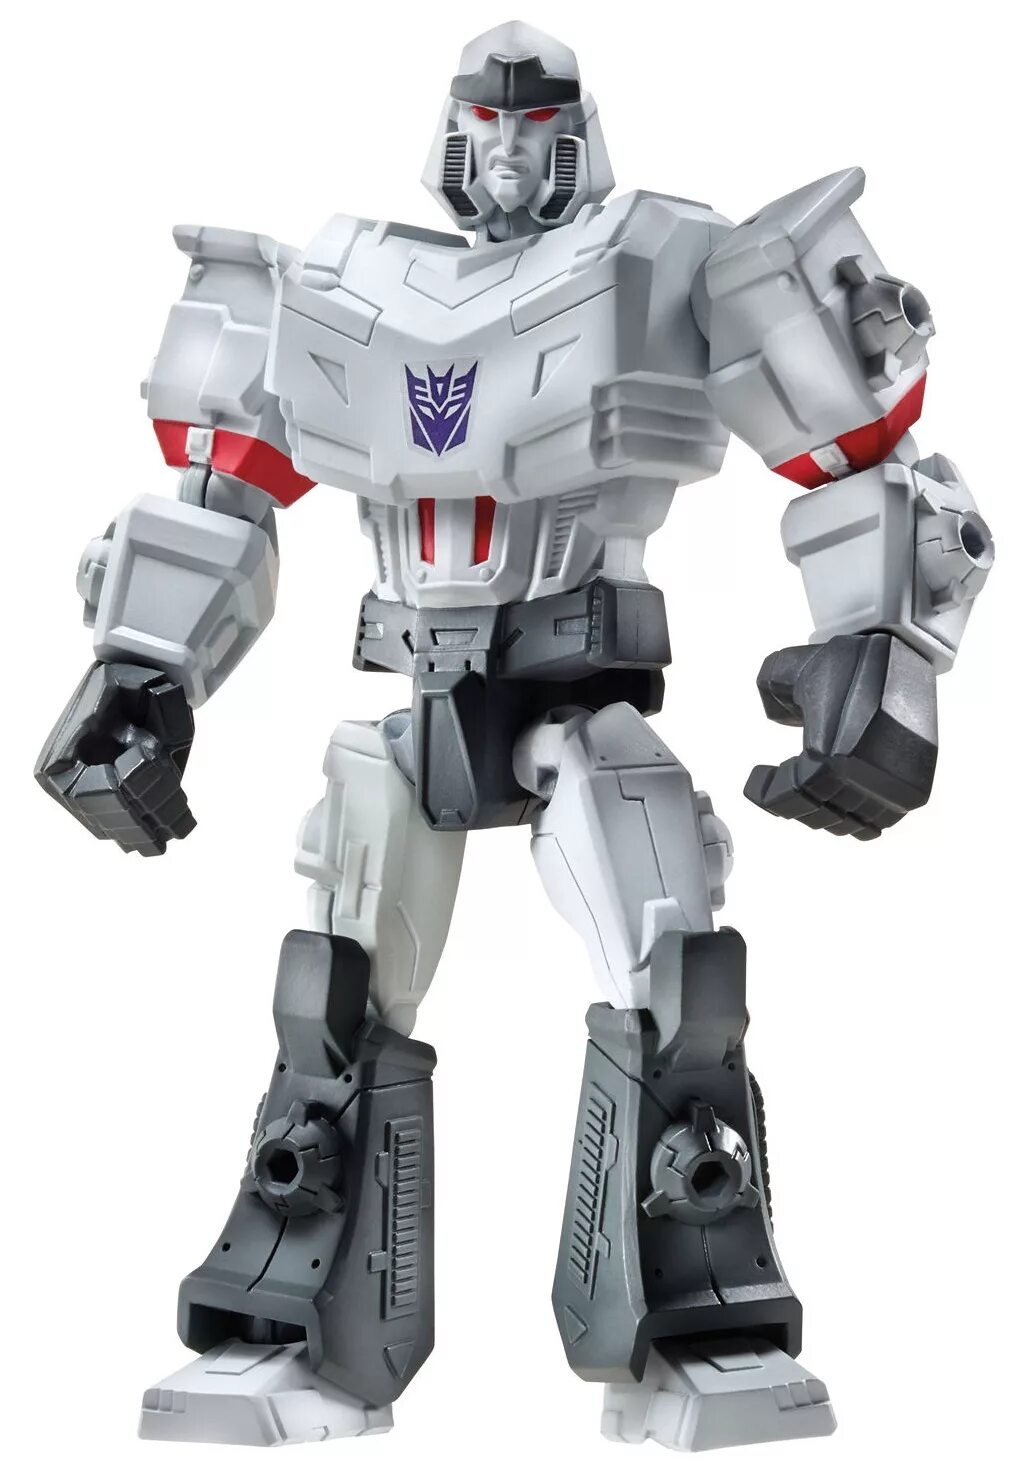 Мегатрон трансформер игрушка. Transformers игрушка Мегатрон. Игрушки трансформеры Hero Mashers. Transformers Hero Mashers Megatron.